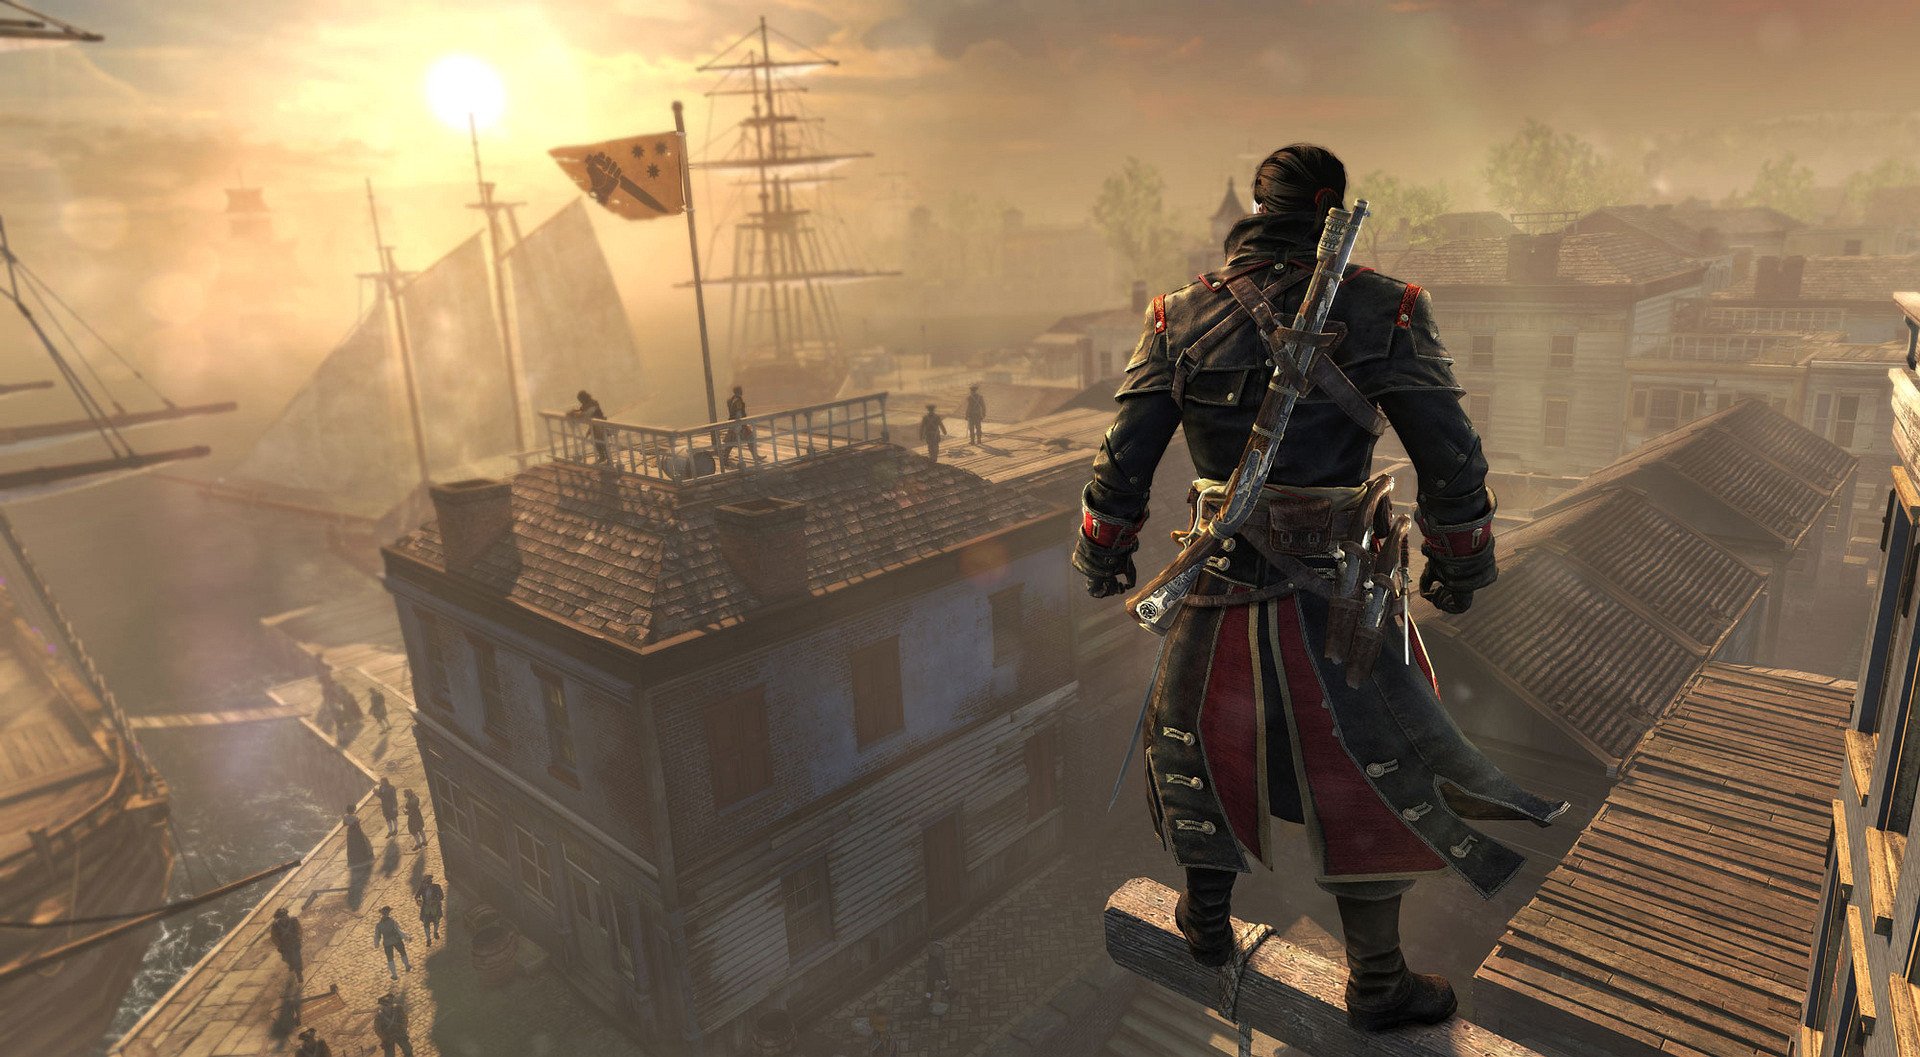 اساسین یا تمپلار، مسئله این است | تحلیل نمایش Assassin’s Creed : Rogue در Gamescom 2014